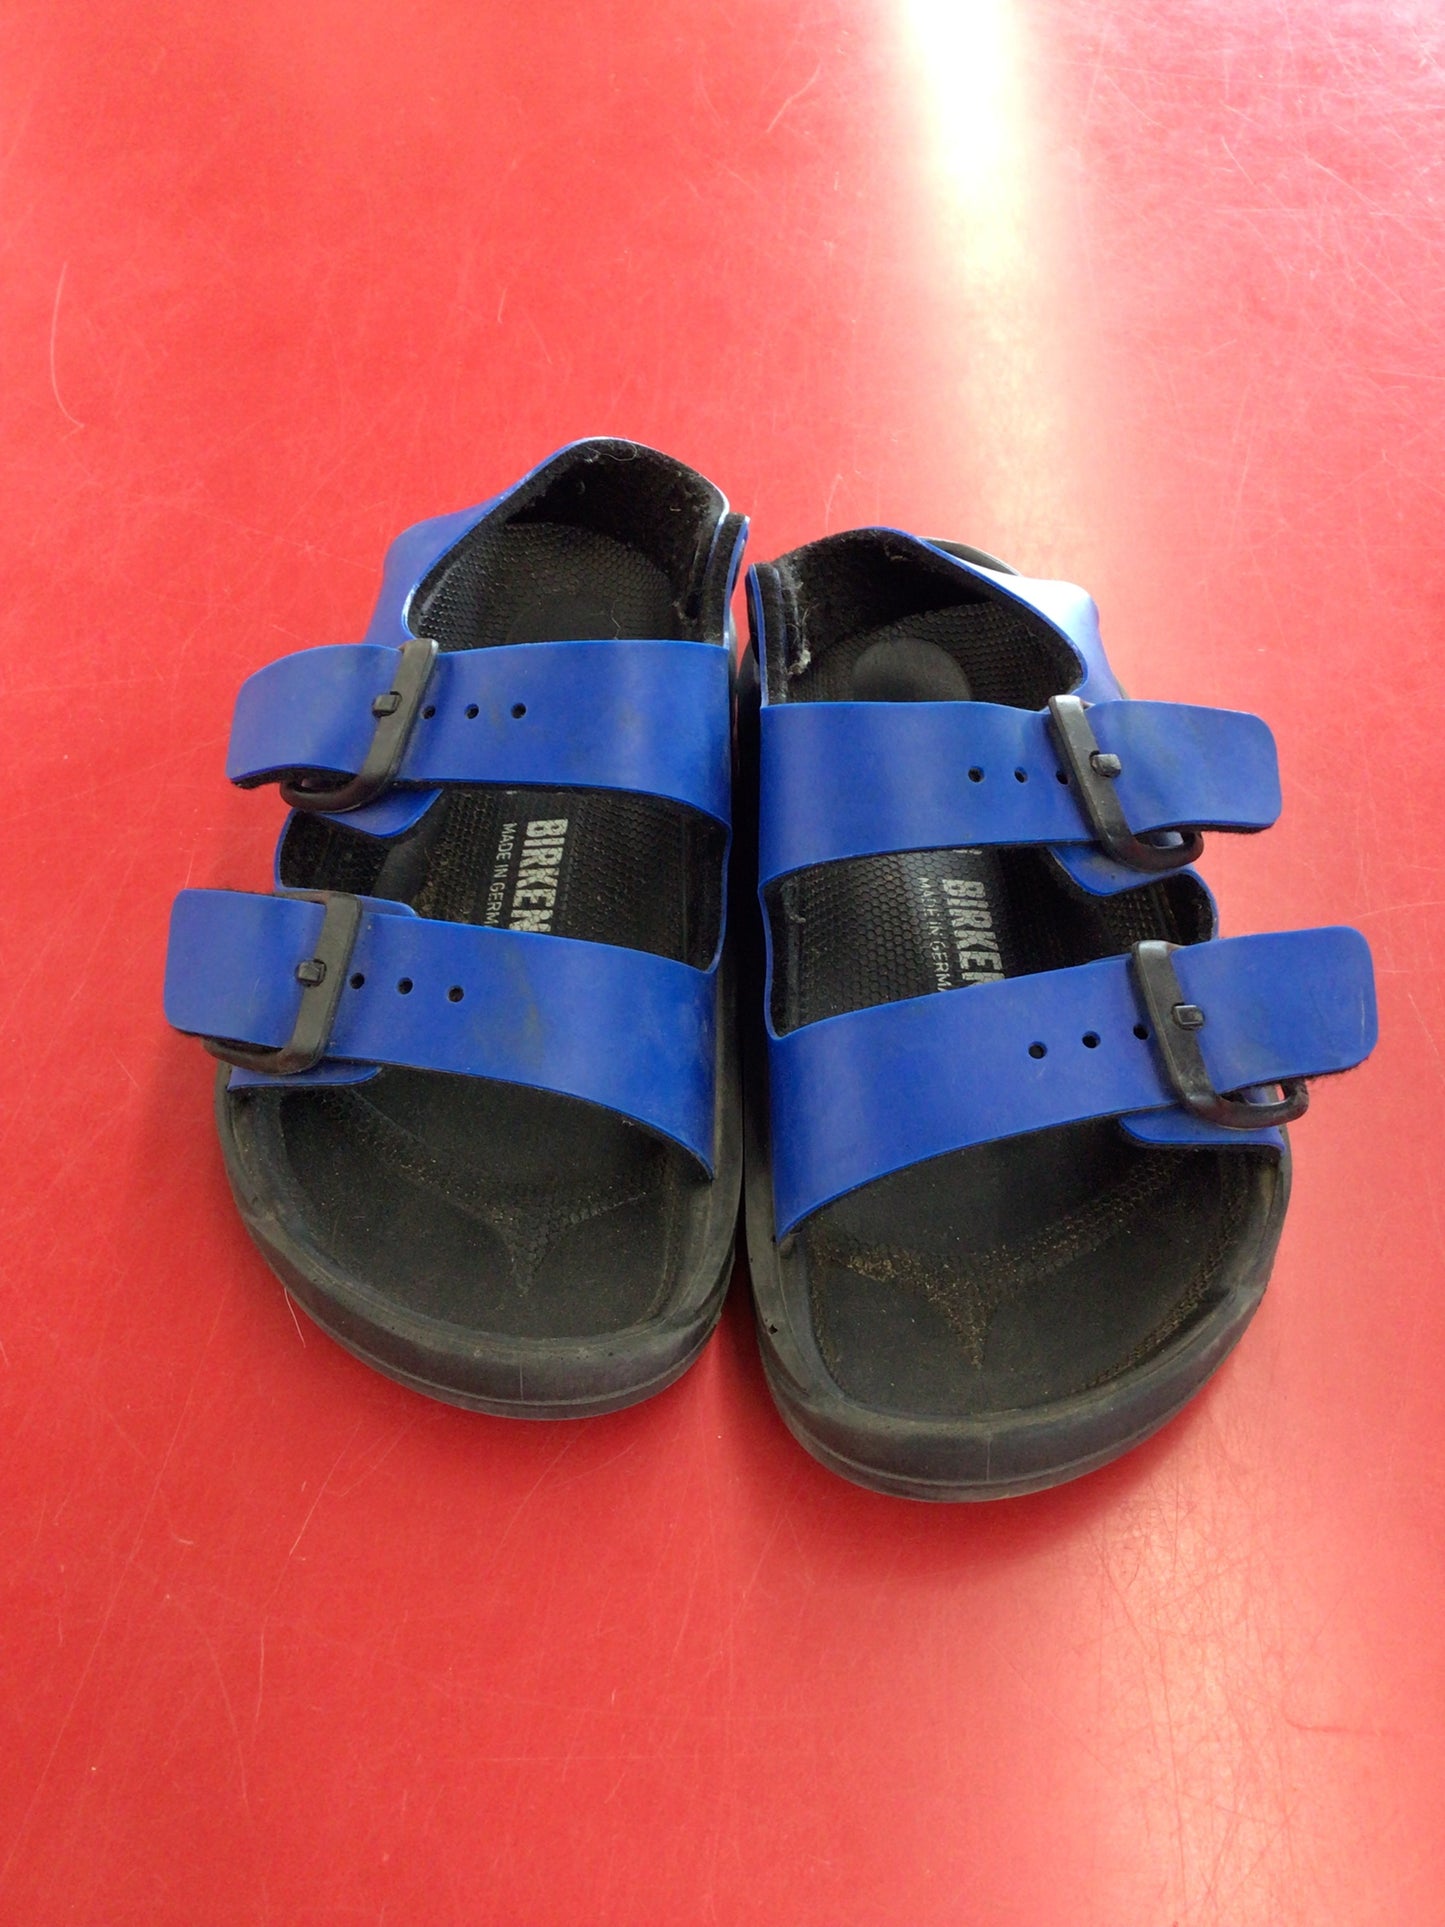 Size 27 Black & Blue Birkenstock Sandals